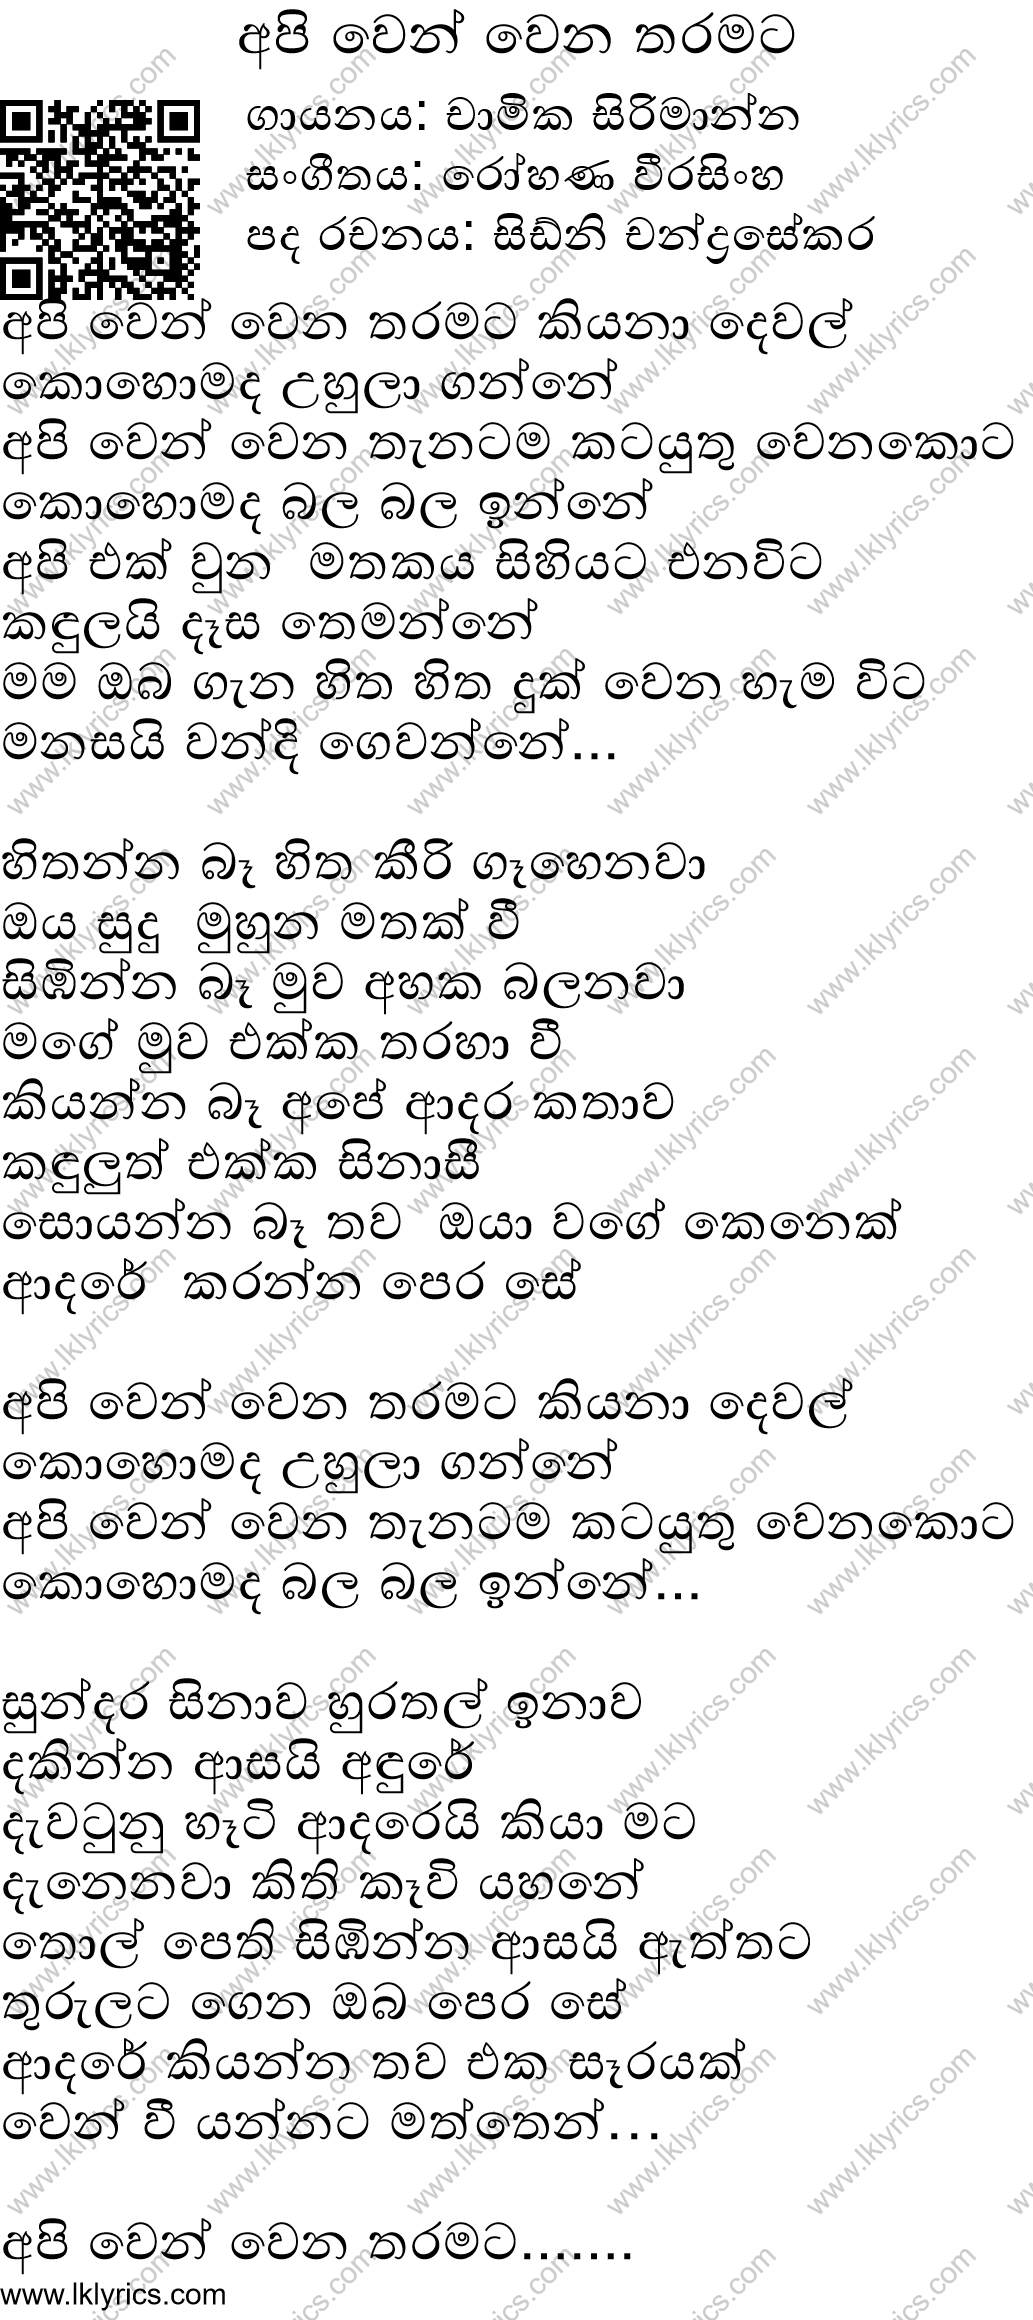 Ra Wena Tharamata Man Kemathi Lyrics